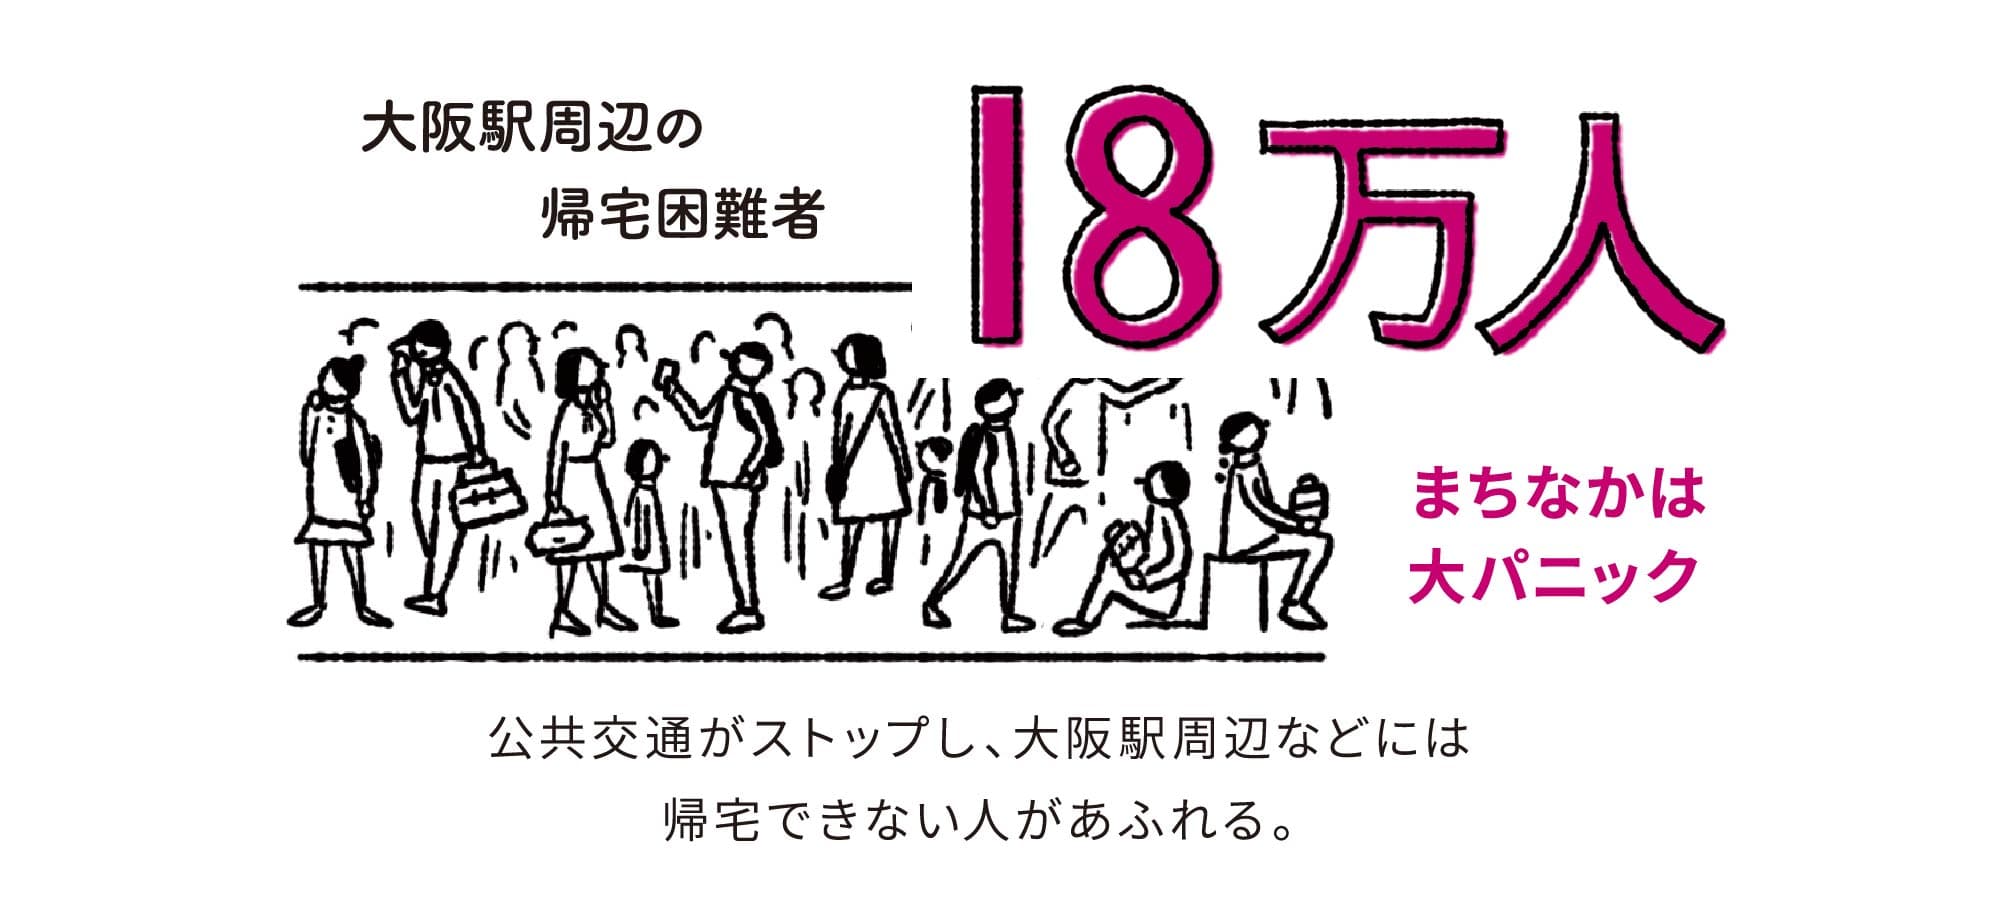 公共交通がストップし、大阪駅周辺などには帰宅できない人があふれる。